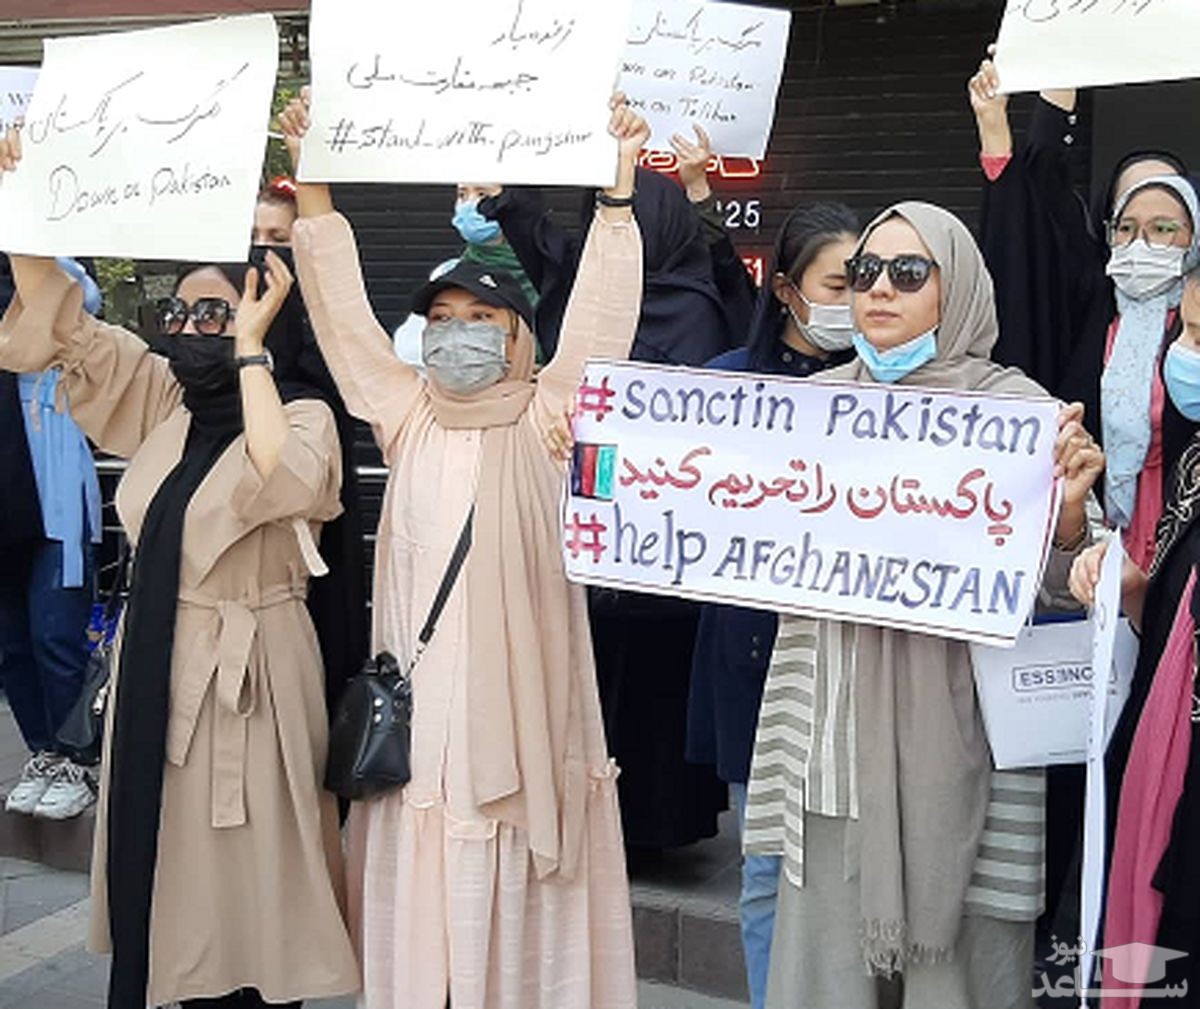 شعار مرگ بر طالبان و مرگ بر پاکستان در تجمع اعتراضی در ایران + تصاویر